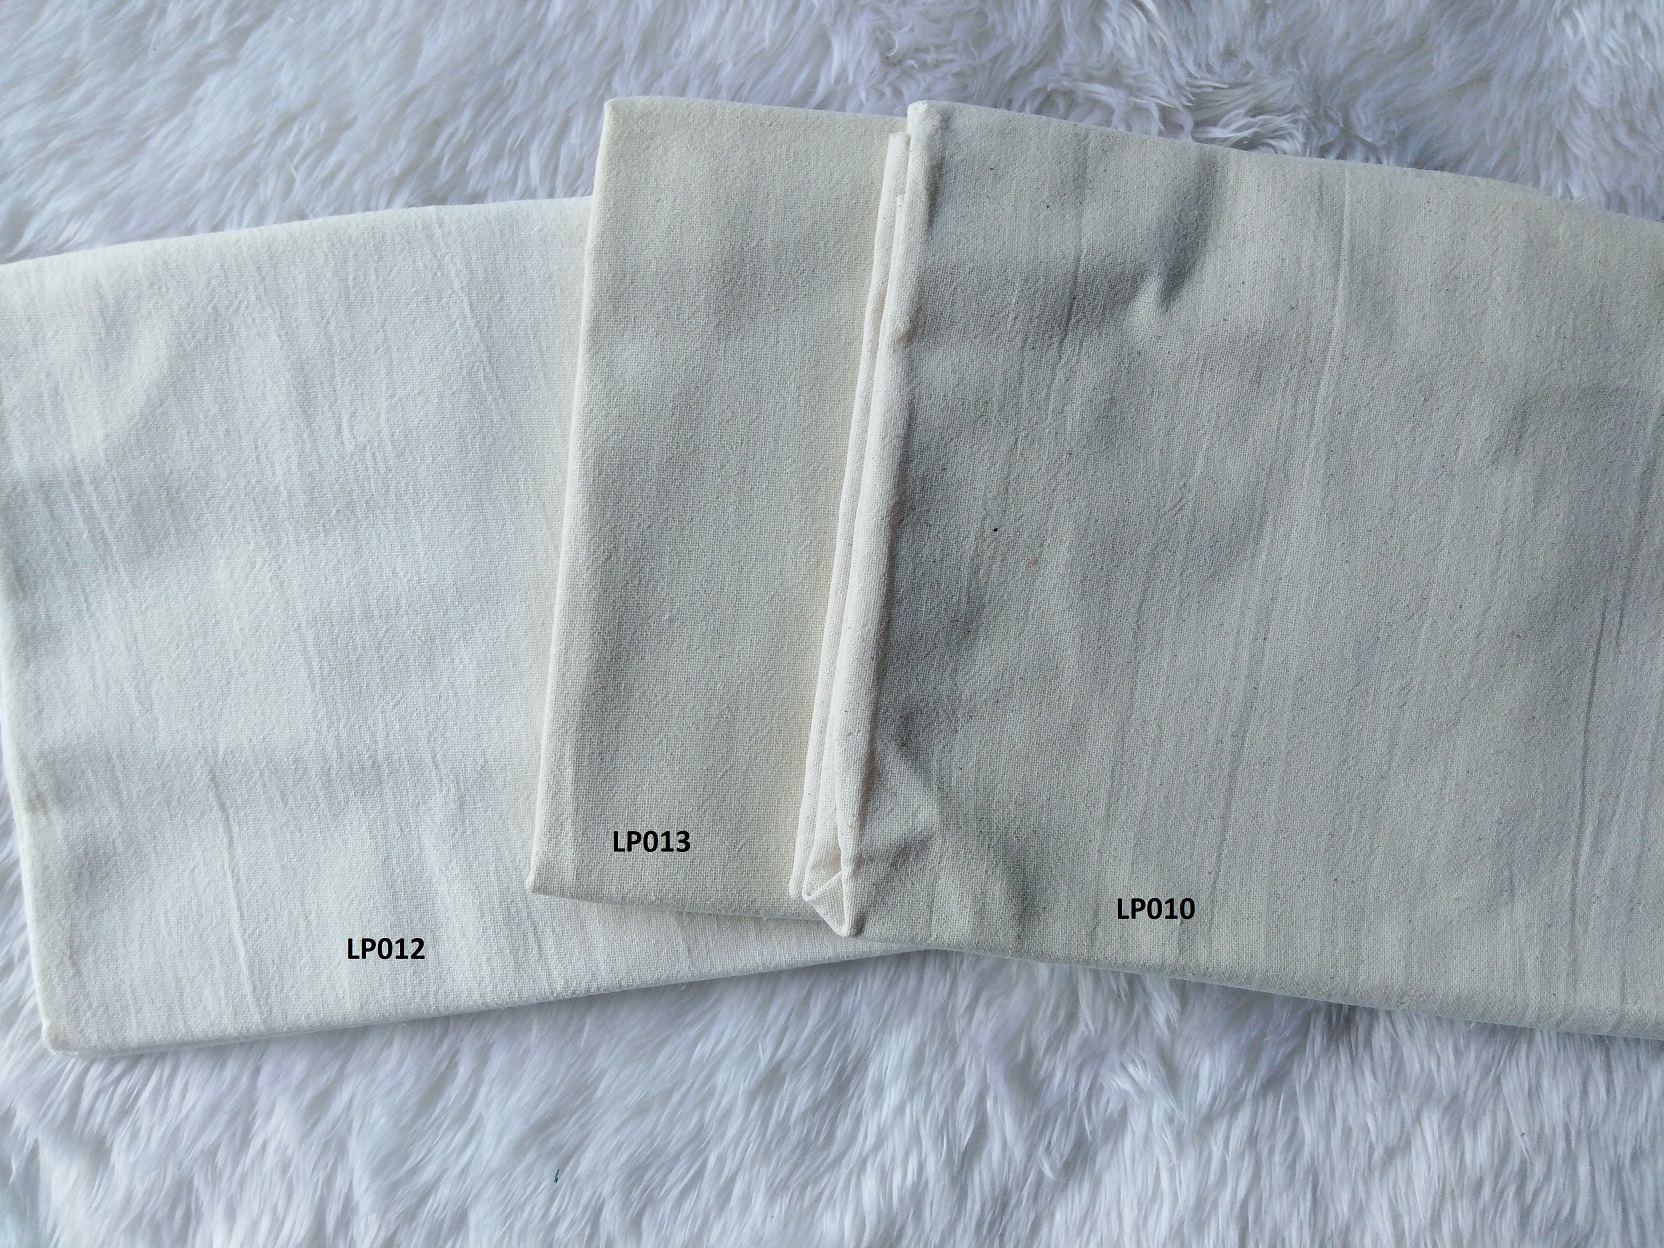 Lanna soft plain color cotton ผ้าฝ้ายเมืองสีพื้นซักนุ่ม LP013